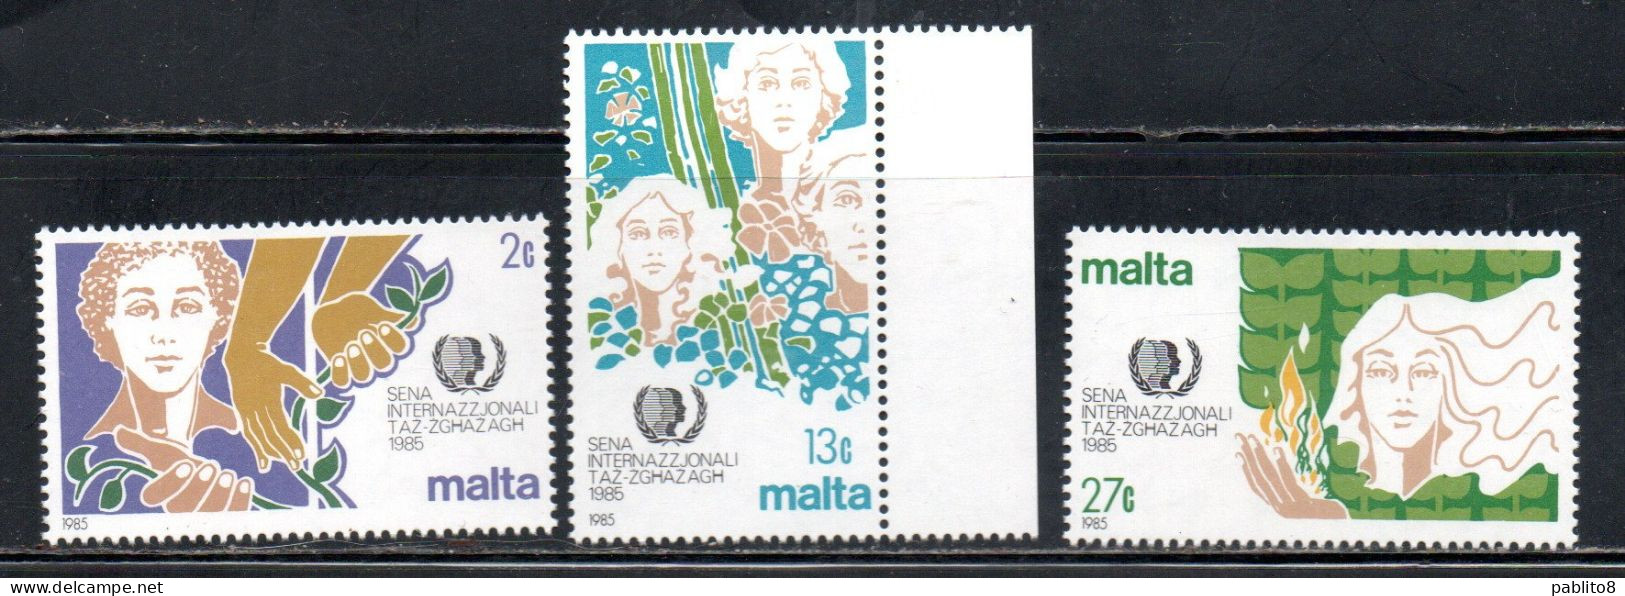 MALTA 1985 INTERNATIONAL YOUTH YEAR ANNO INTERNAZIONALE DELLA GIOVENTÙ COMPLETE SET SERIE COMPLETA MNH - Malta